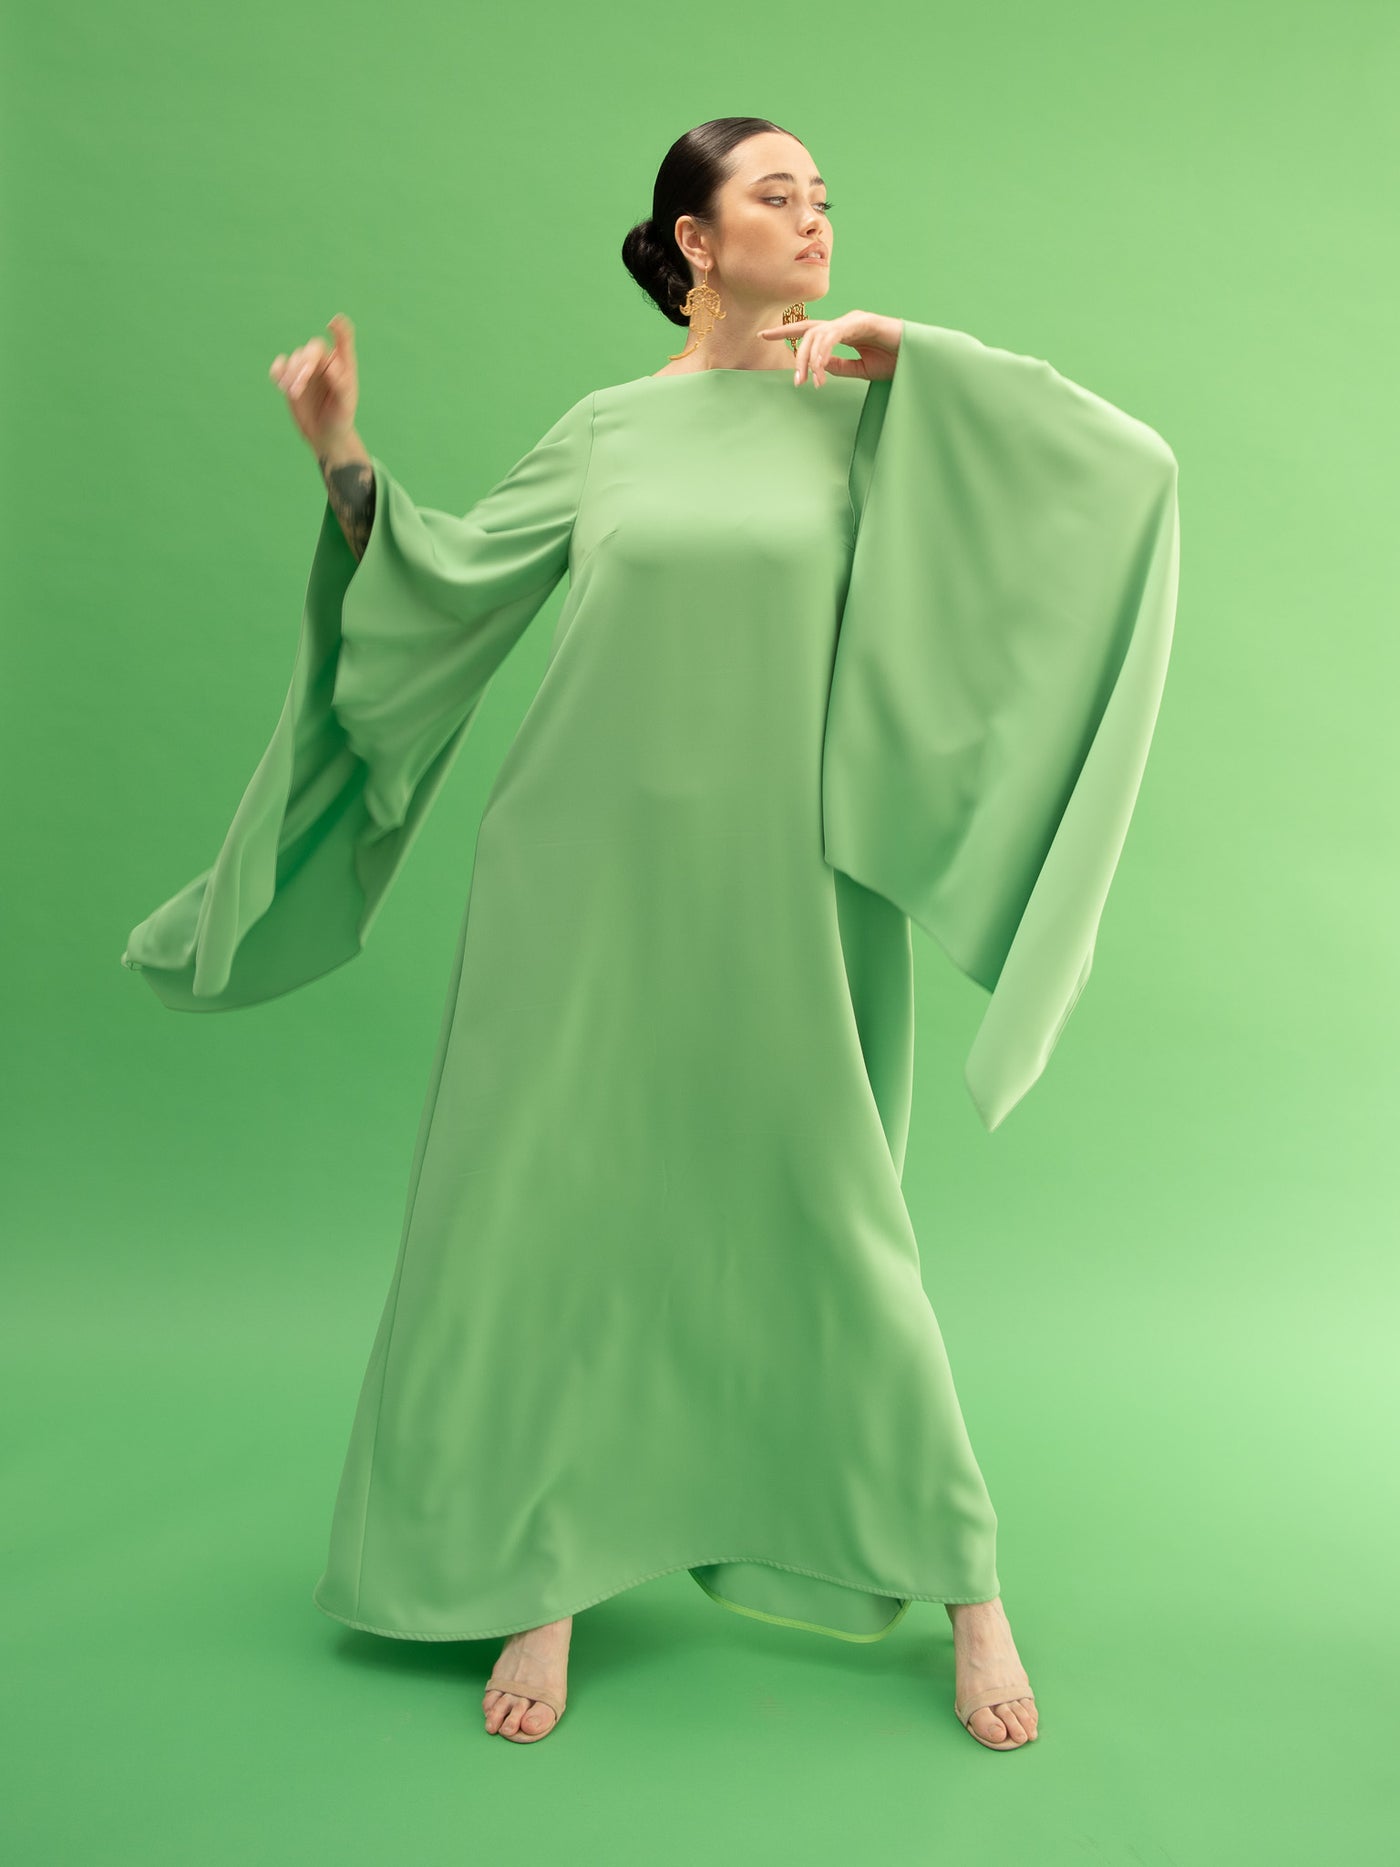 Mandala Green Dress